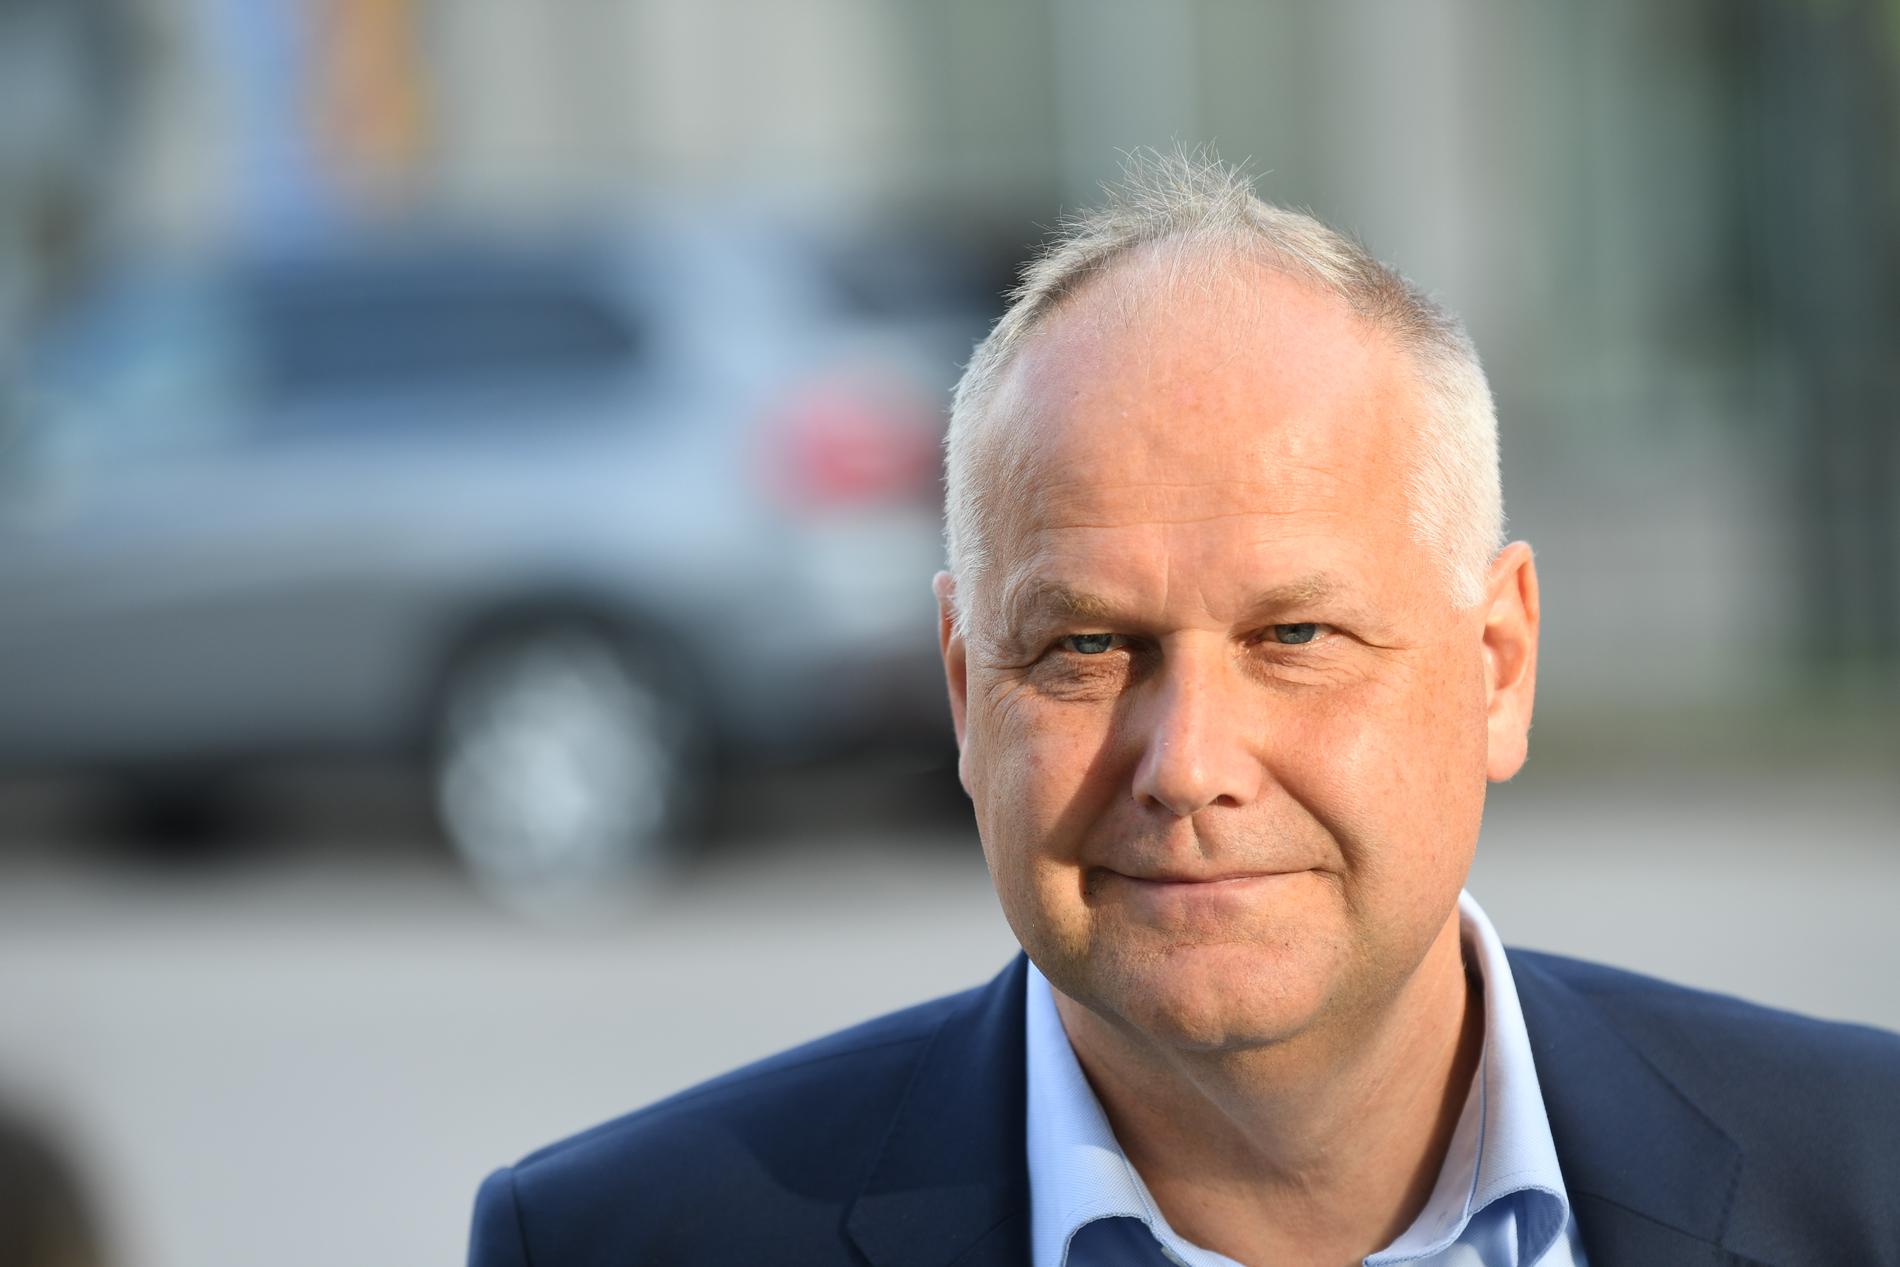 Jonas Sjöstedt var bäst i debatten enligt en färsk mätning från Aftonbladet/Demoskop. 